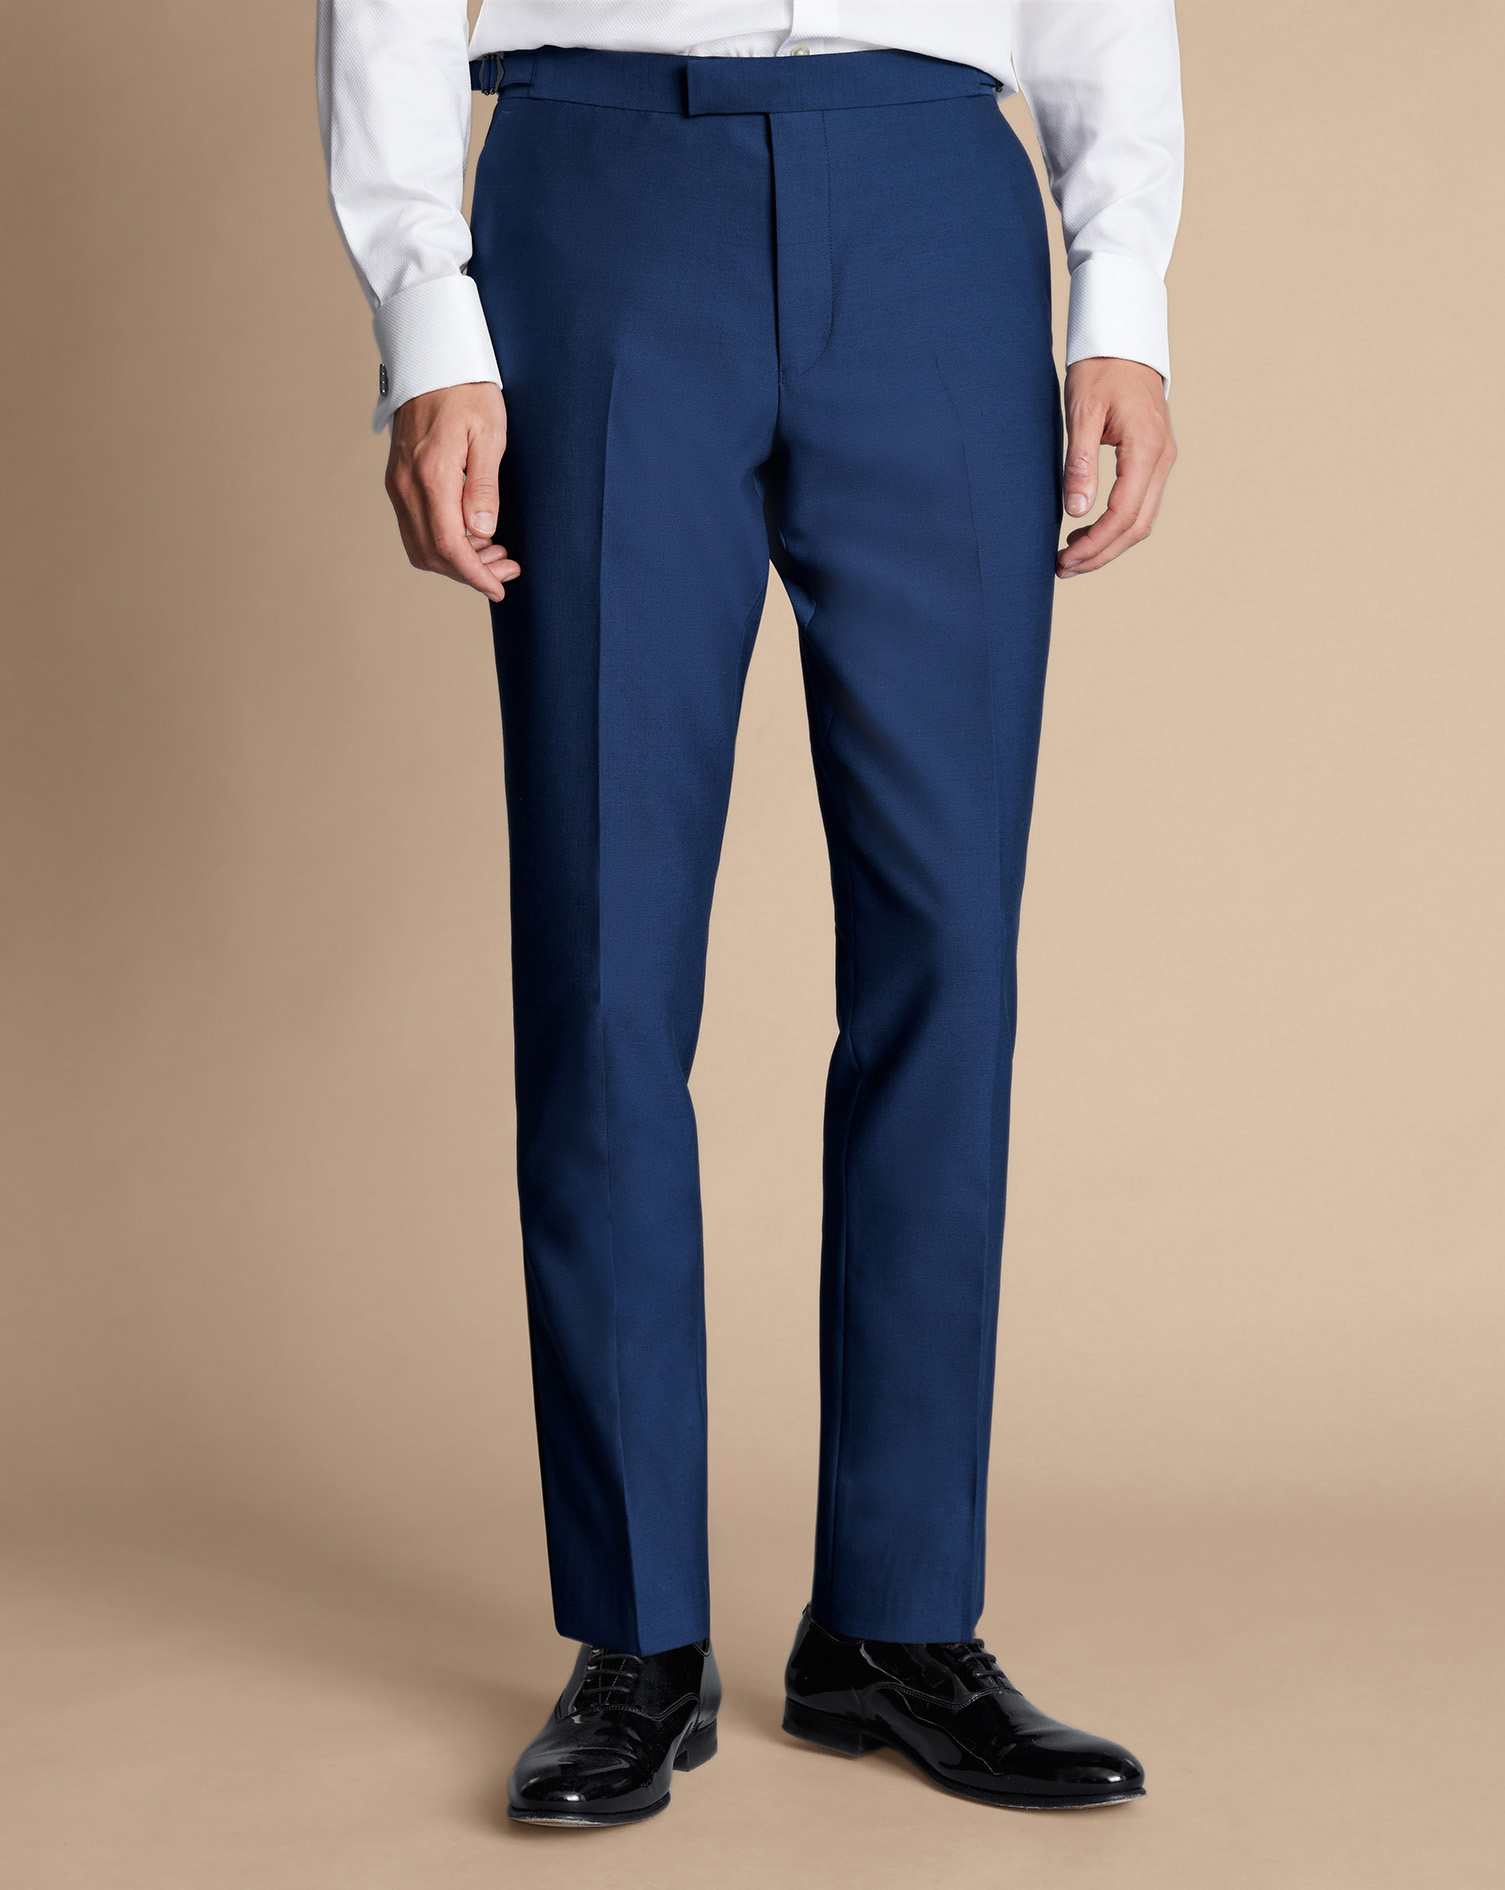 Men's Charles Tyrwhitt Dinner Suit Trousers - Royal Blue Size 34/32 Wool
